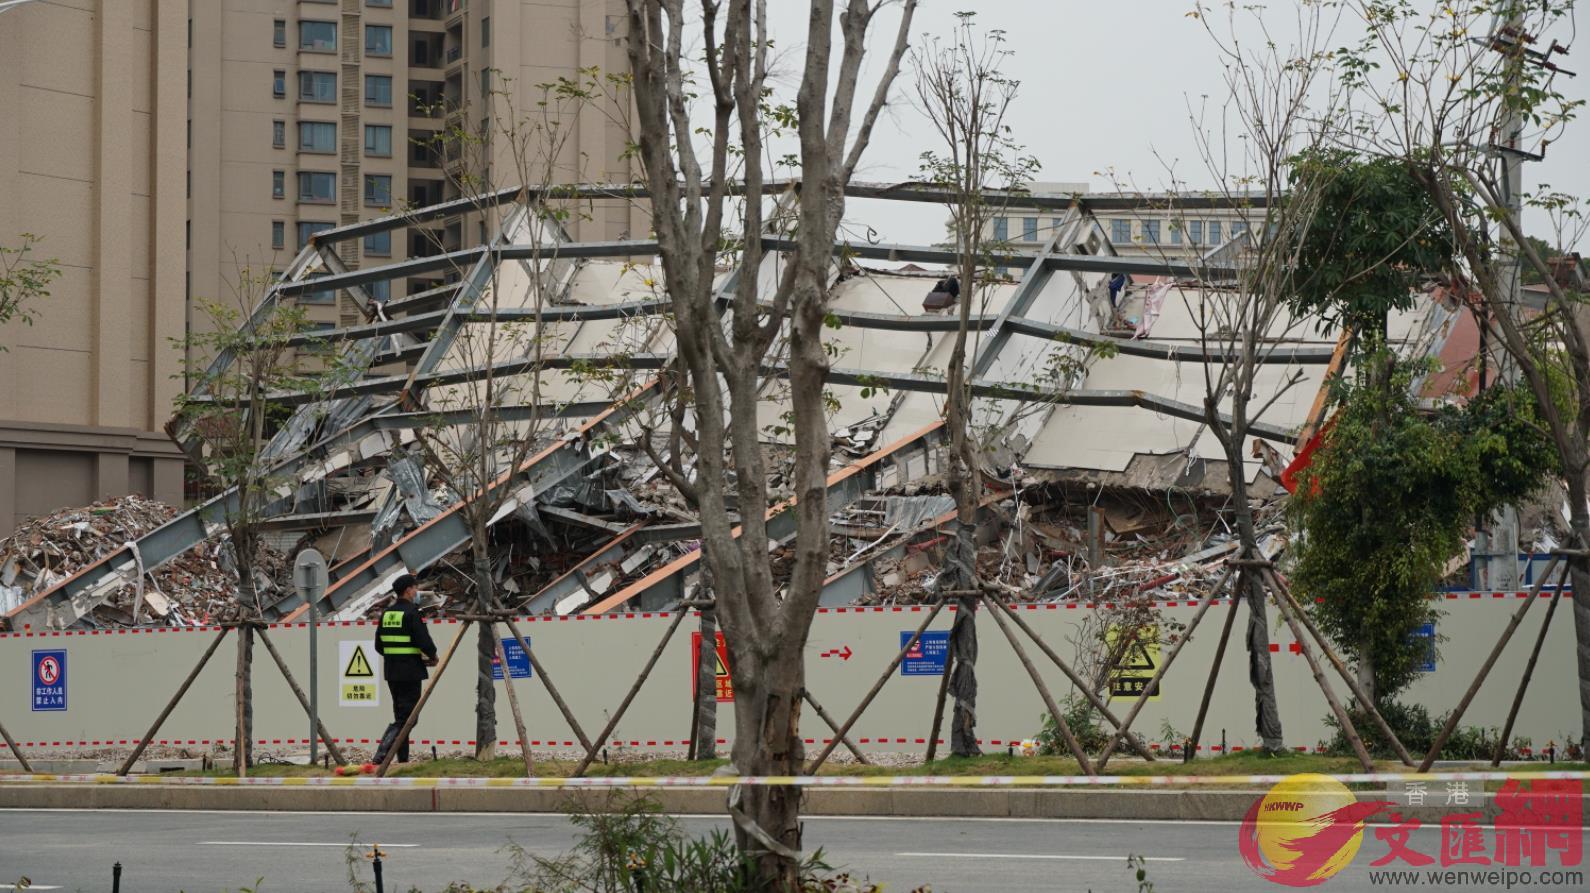 欣佳酒店坍塌現場已用一人多高鐵皮圍擋A對事故現場封存B勘察 (記者蔣煌基 攝)